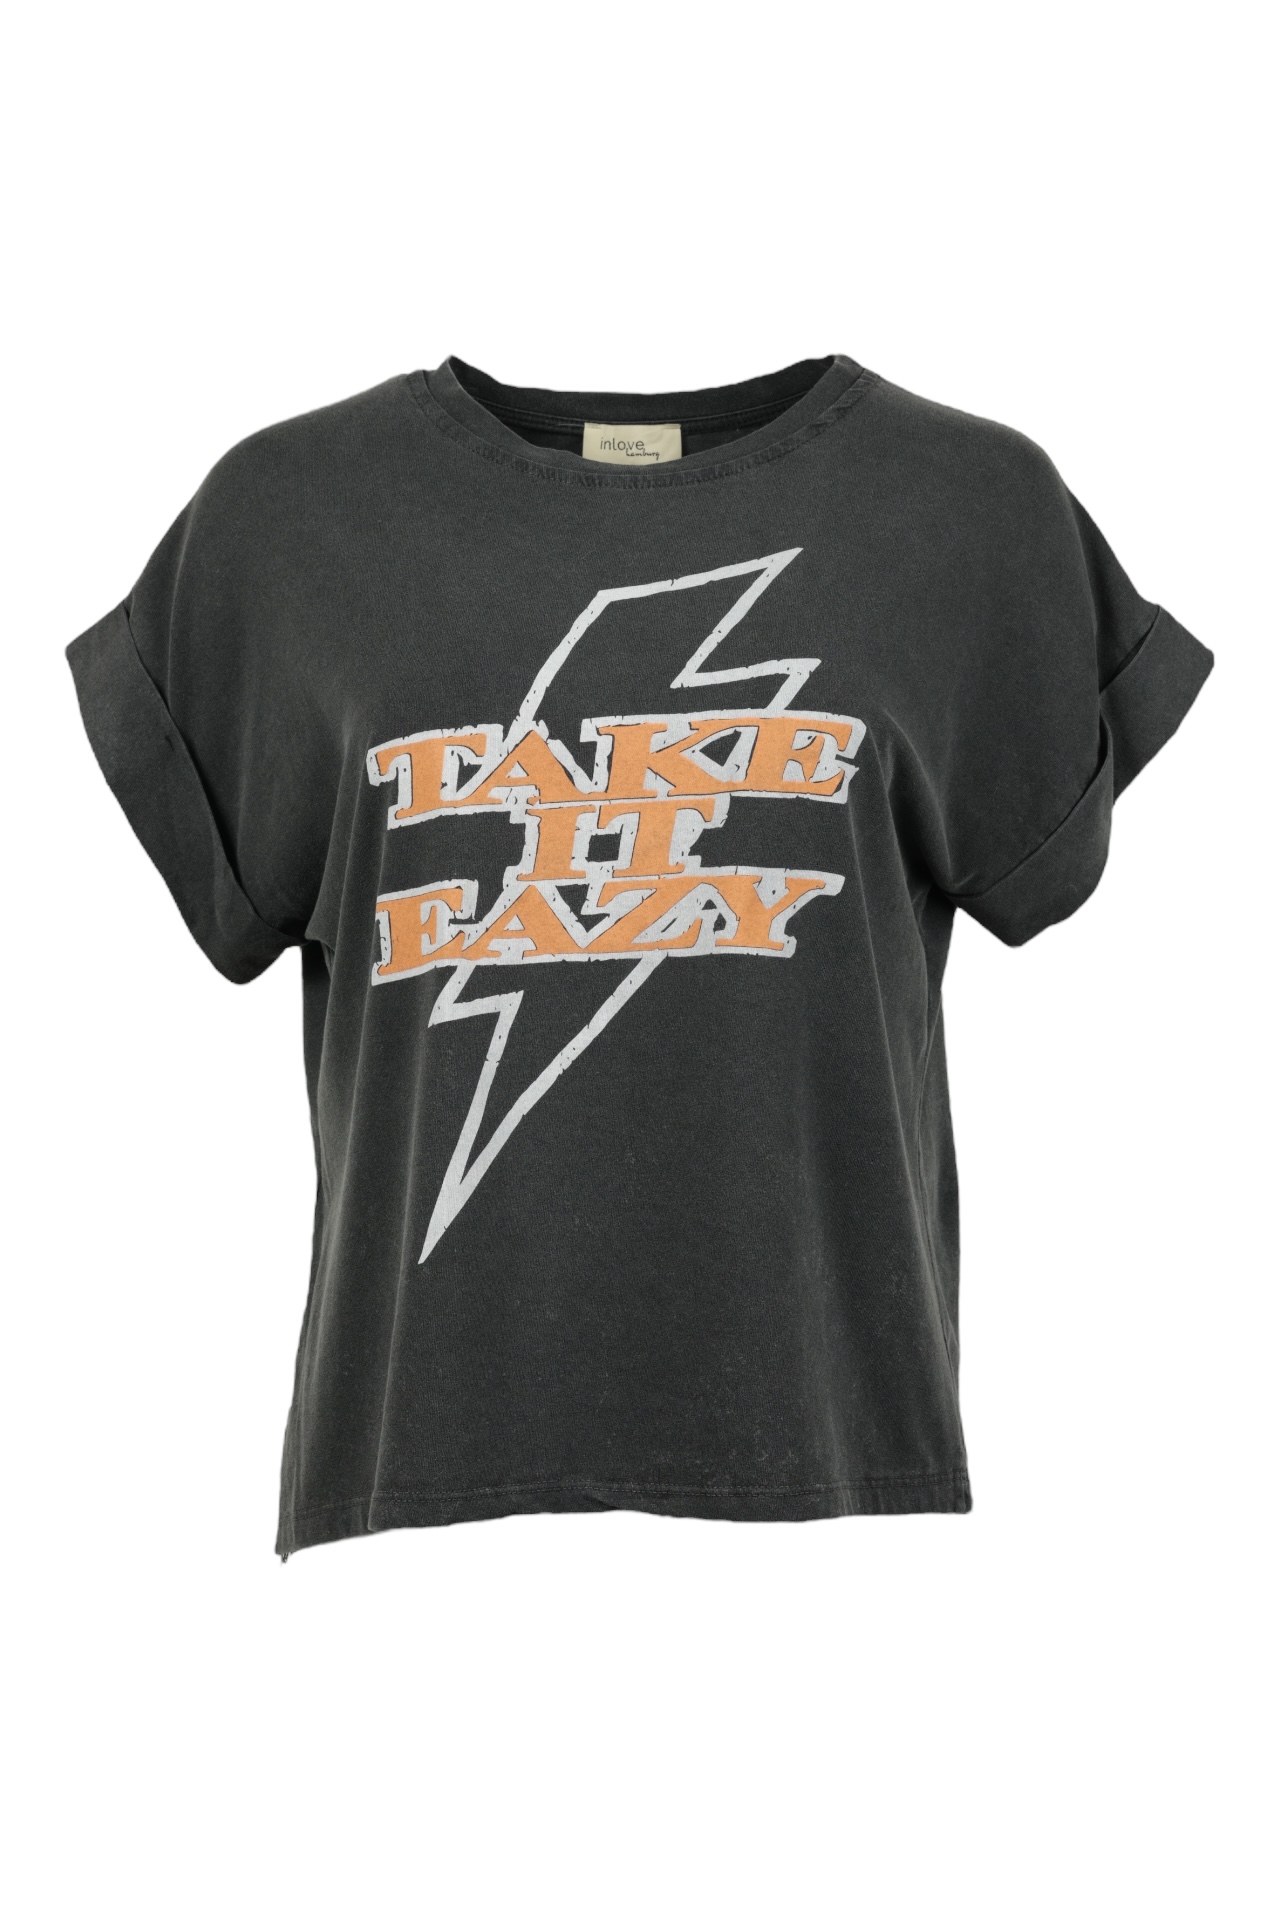 T-Shirt Take it Eazy